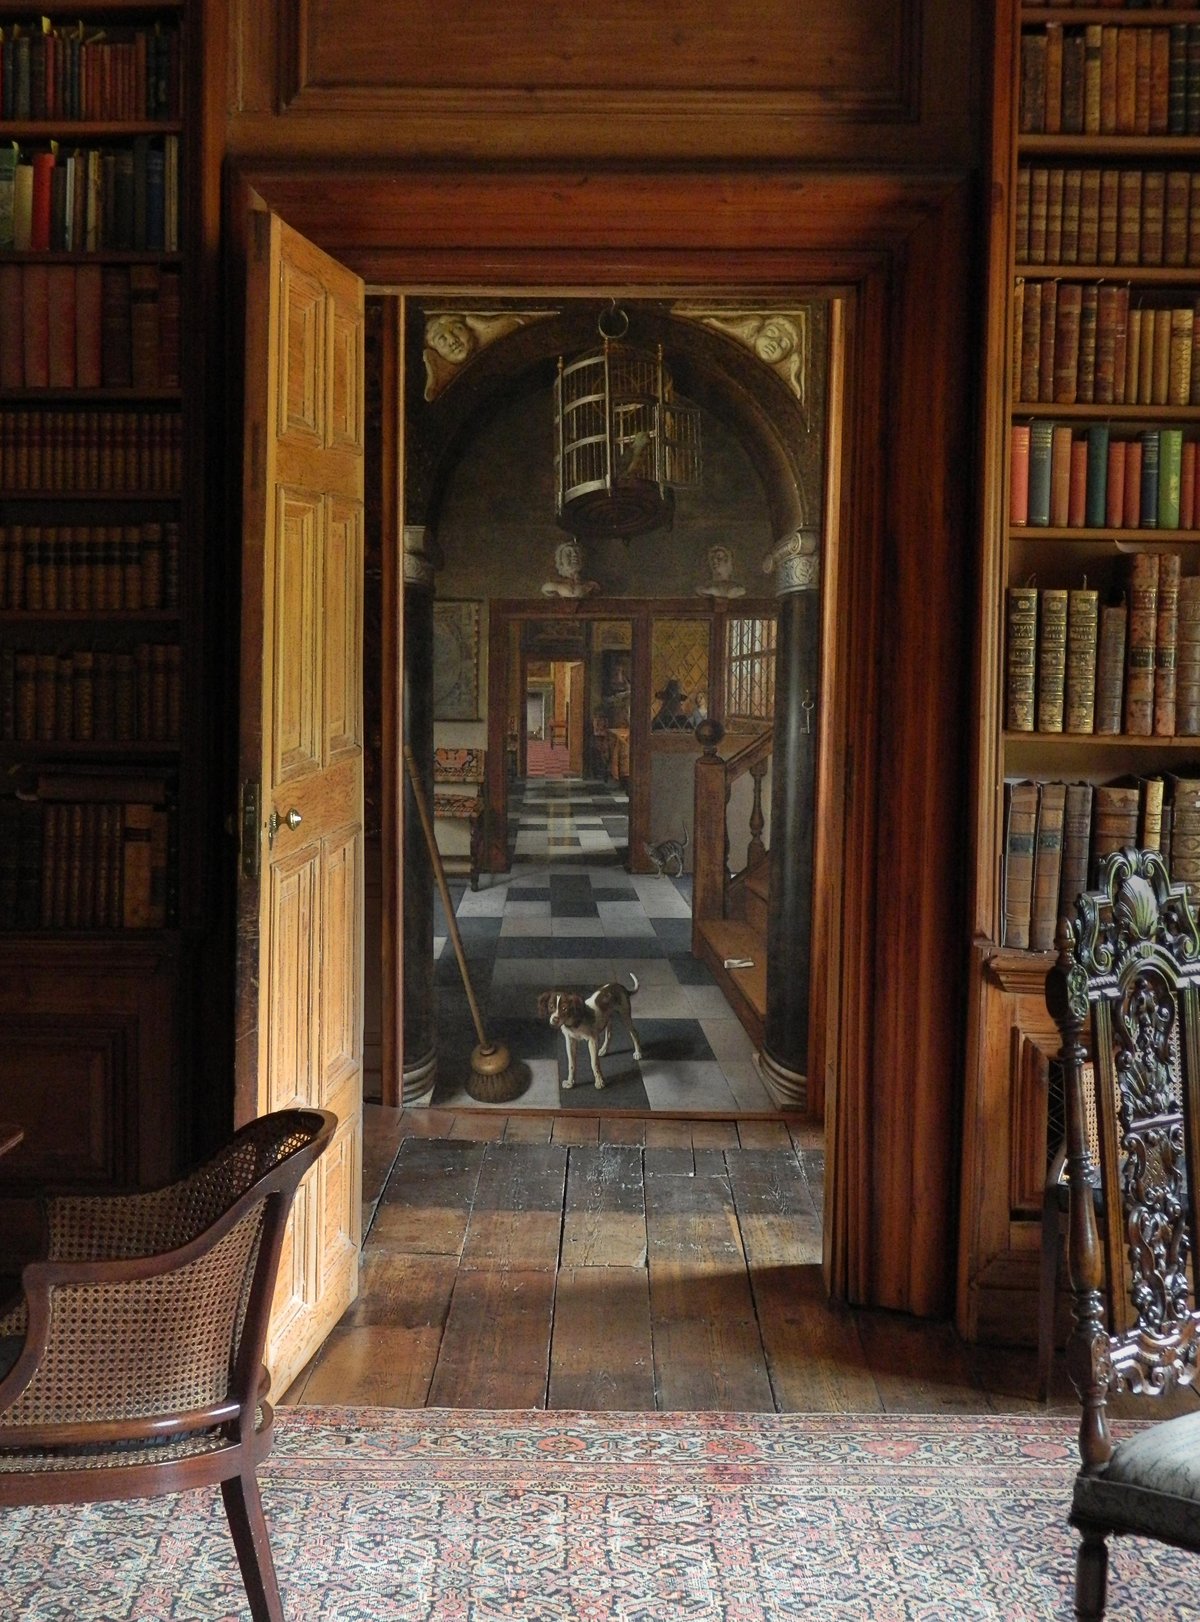 Werk van Van Hoogstraten vanuit een kamer gefotografeerd. Door het perspectief lijkt het alsof je er in kunt lopen.